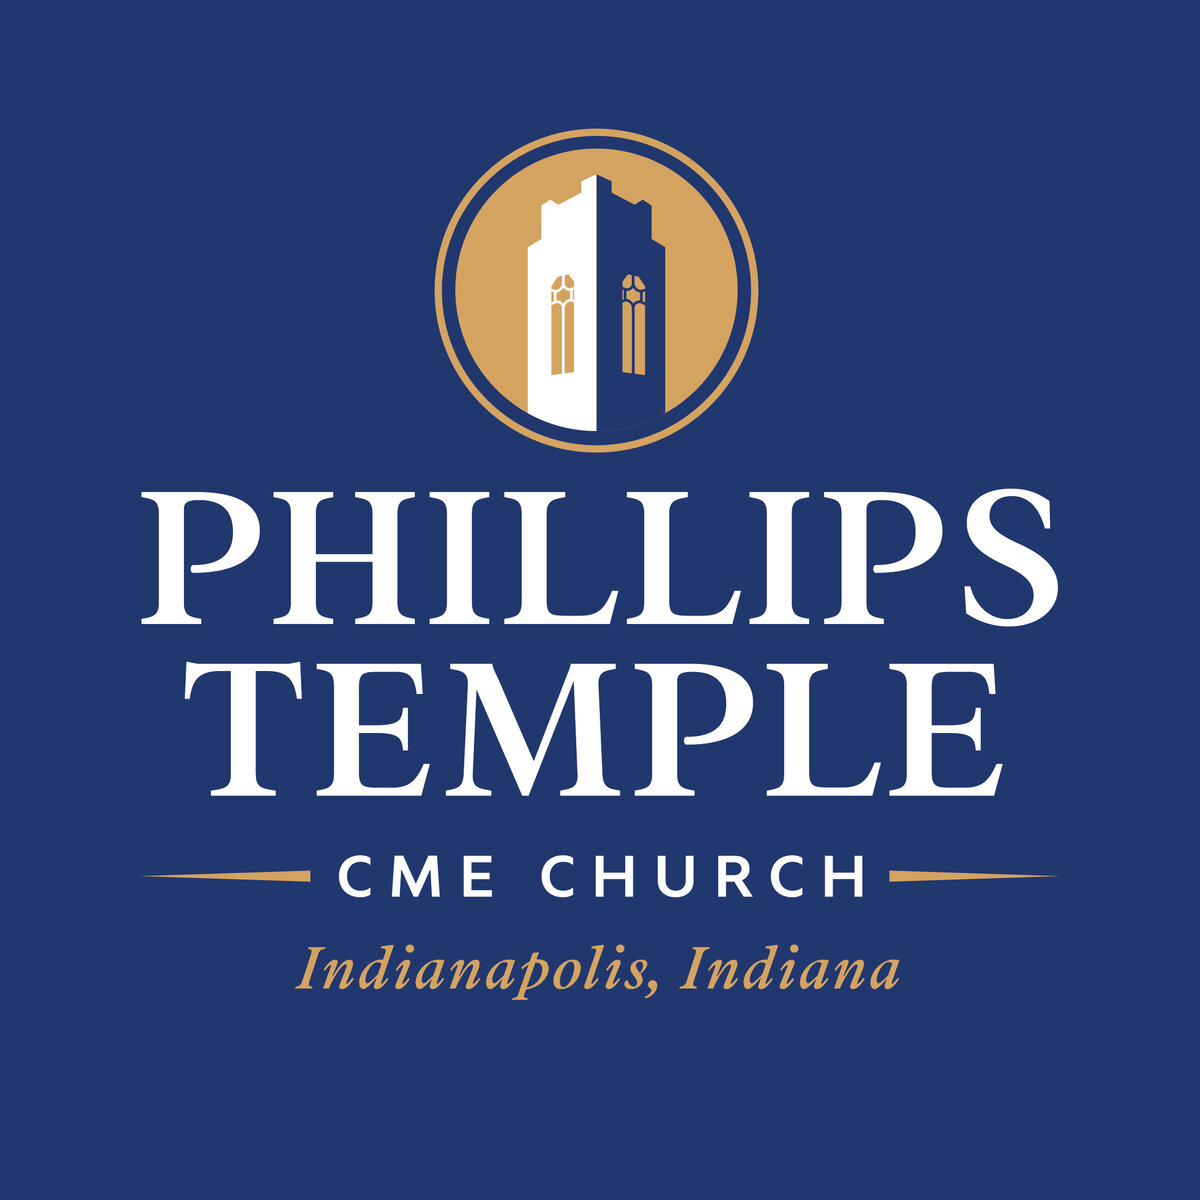 PhillipsTemple_SquareProfiles-02